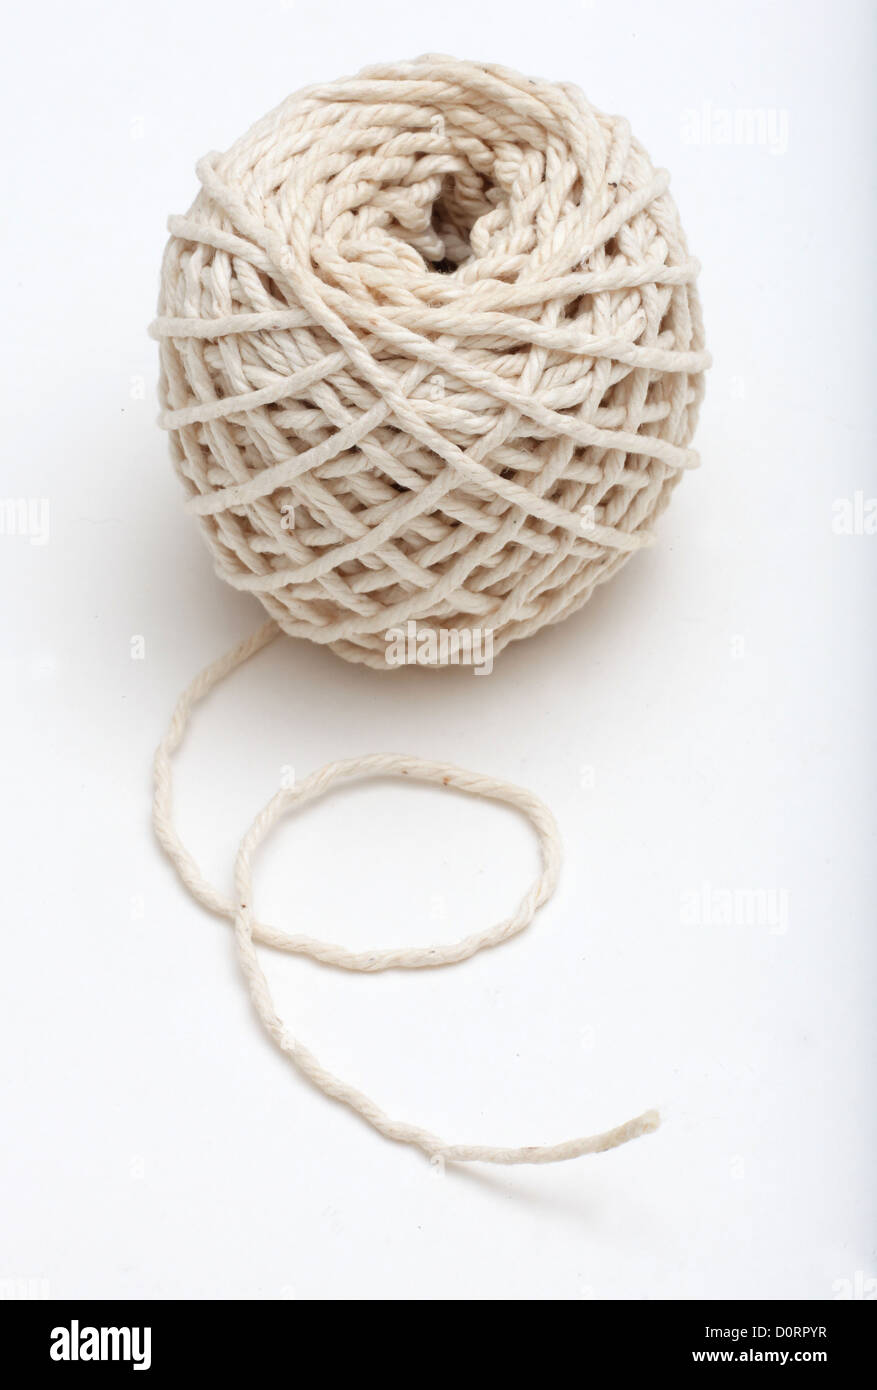 Una palla di spago da cucina Foto stock - Alamy